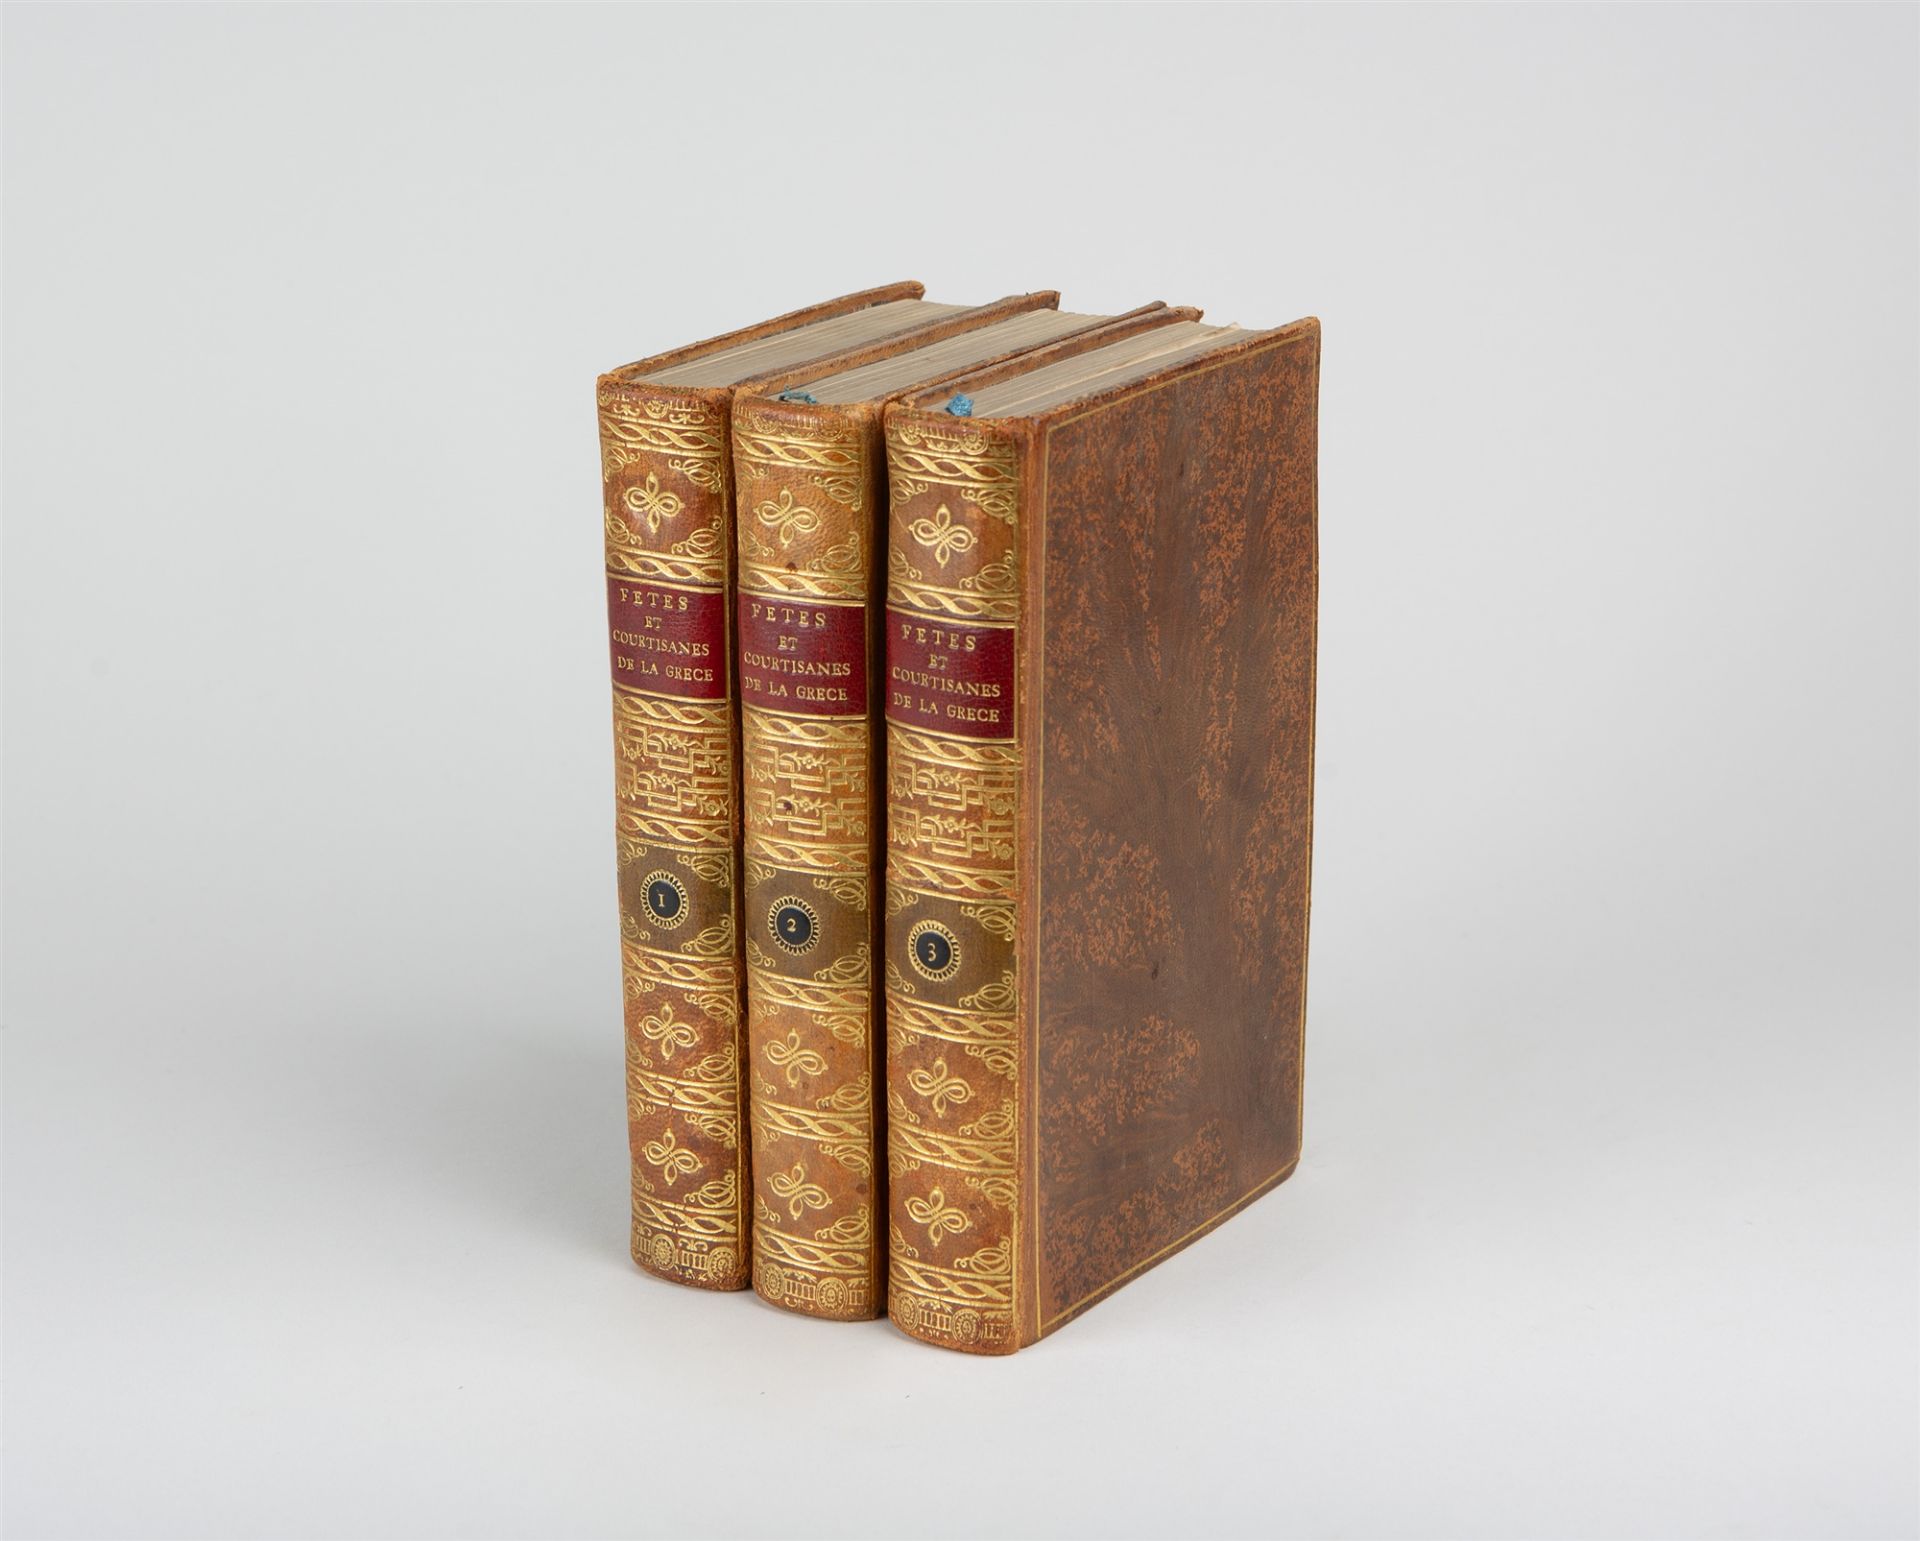 P. Chaussard, Fetes et courtisanes de la Grèce. Bde 1-3 (von 4). Paris 1801. - Image 2 of 2